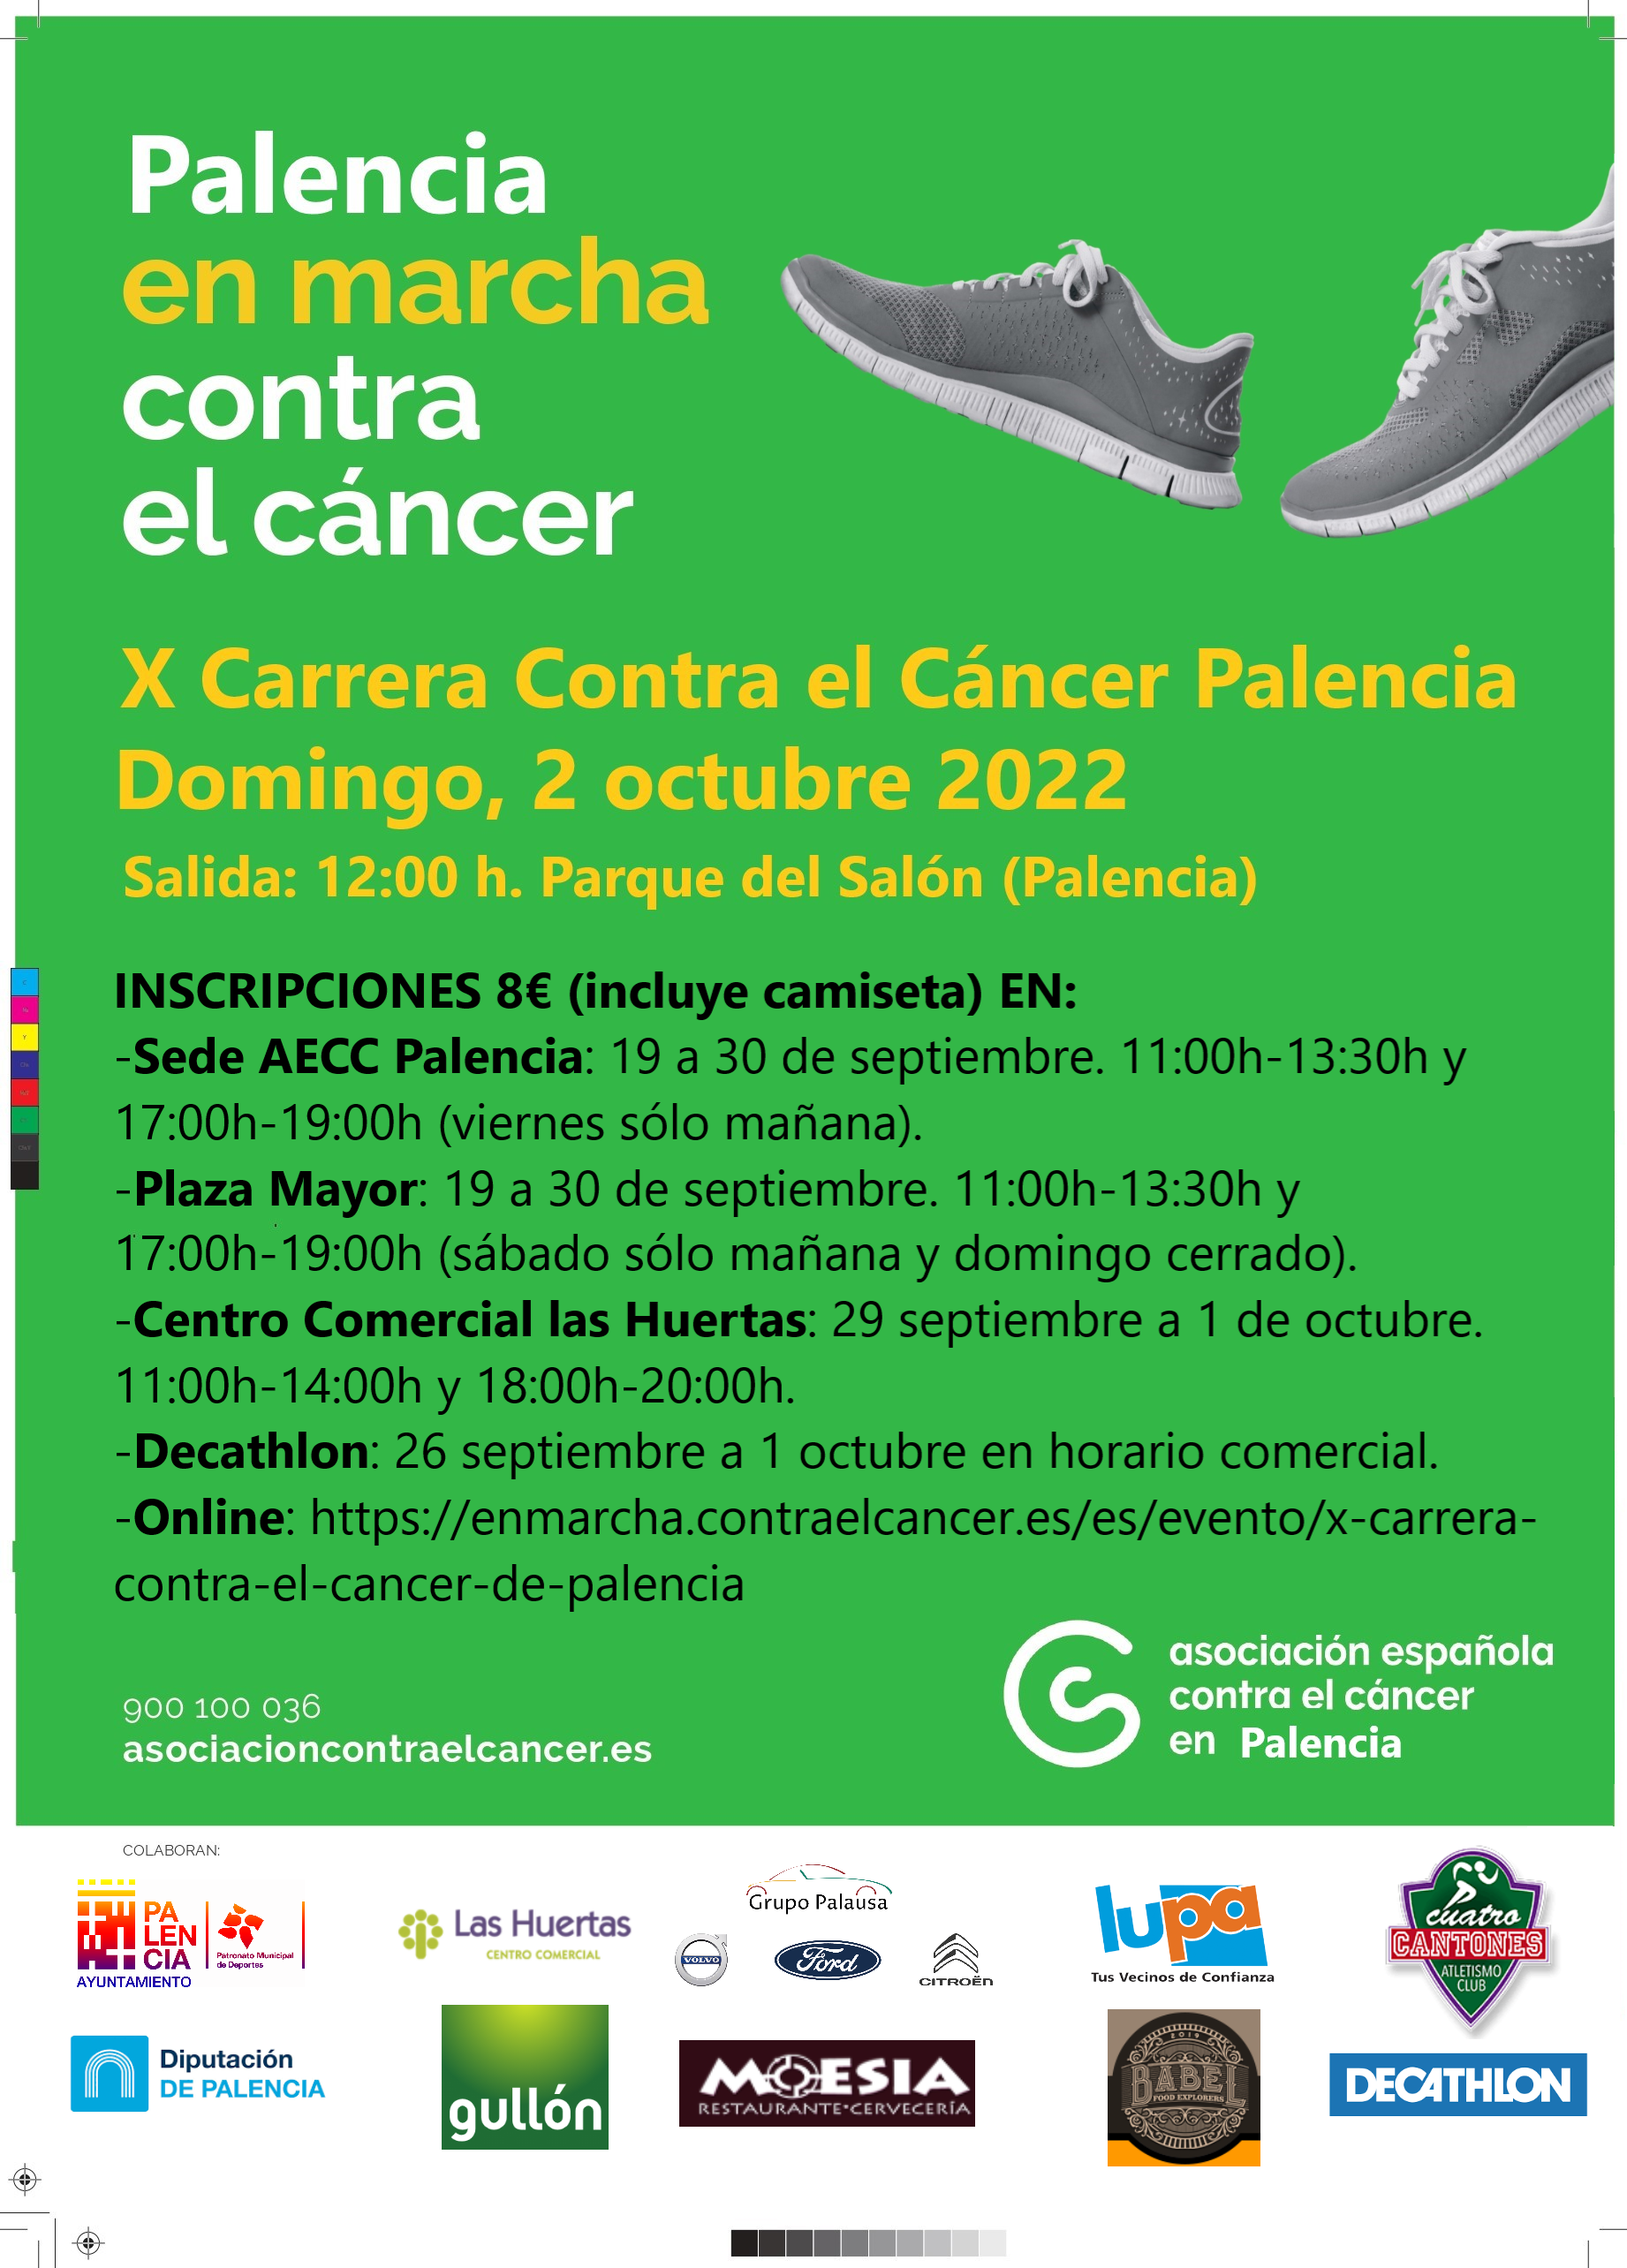 X Carrera contra el cáncer de Palencia